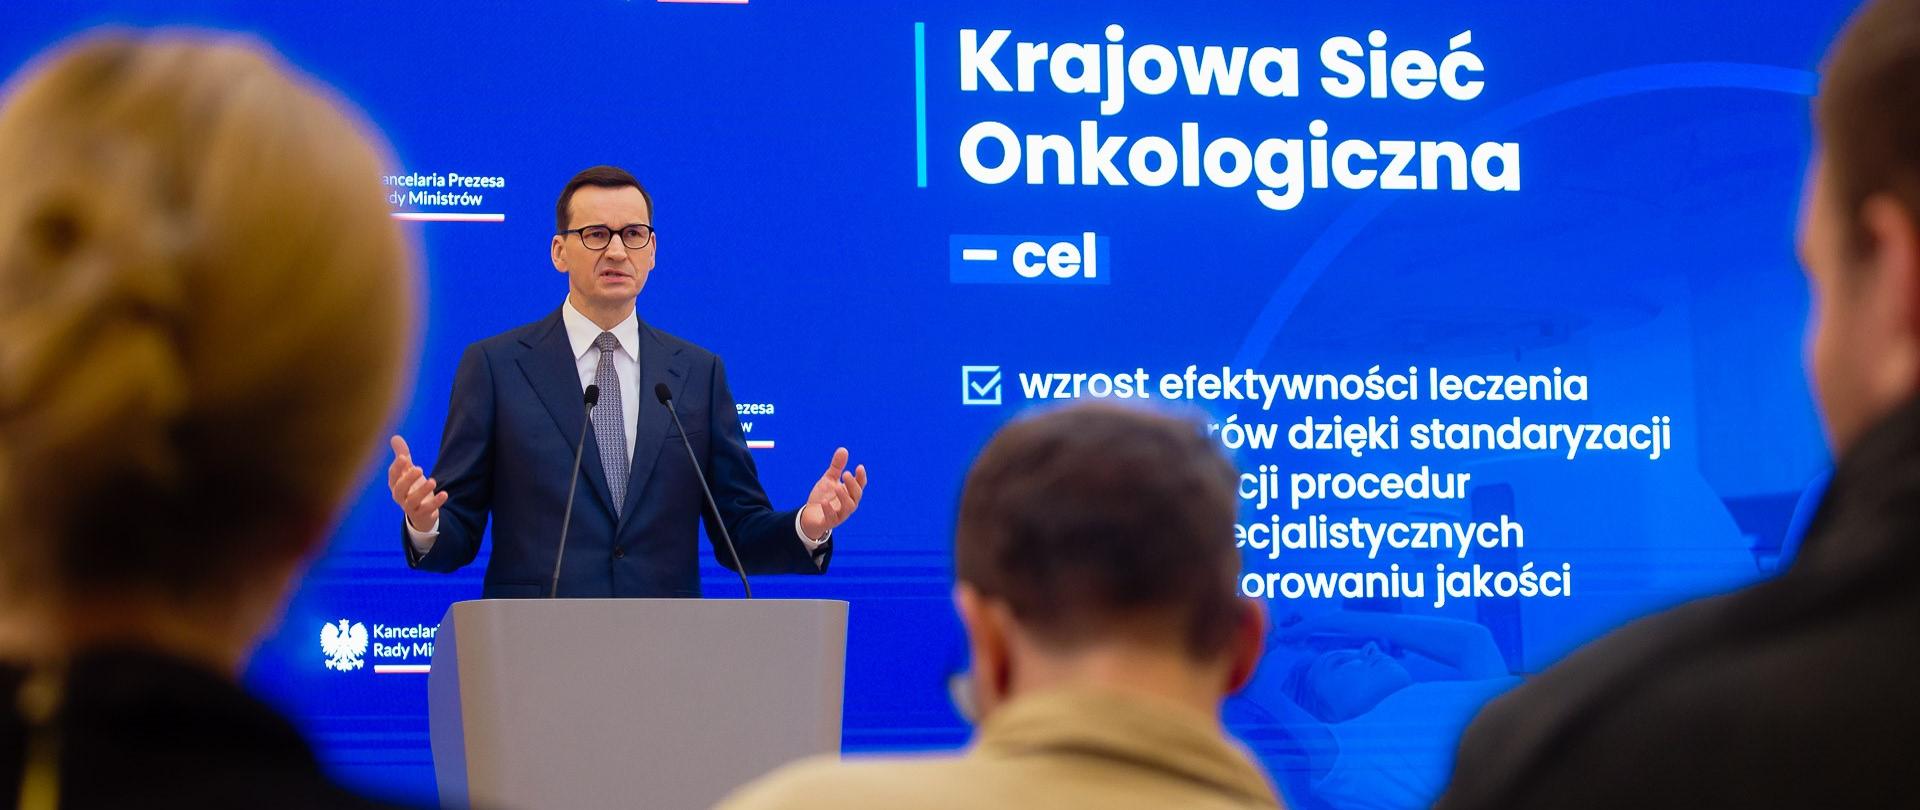 Premier Mateusz Morawiecki podczas konferencji dot. Krajowej Sieci Onkologicznej